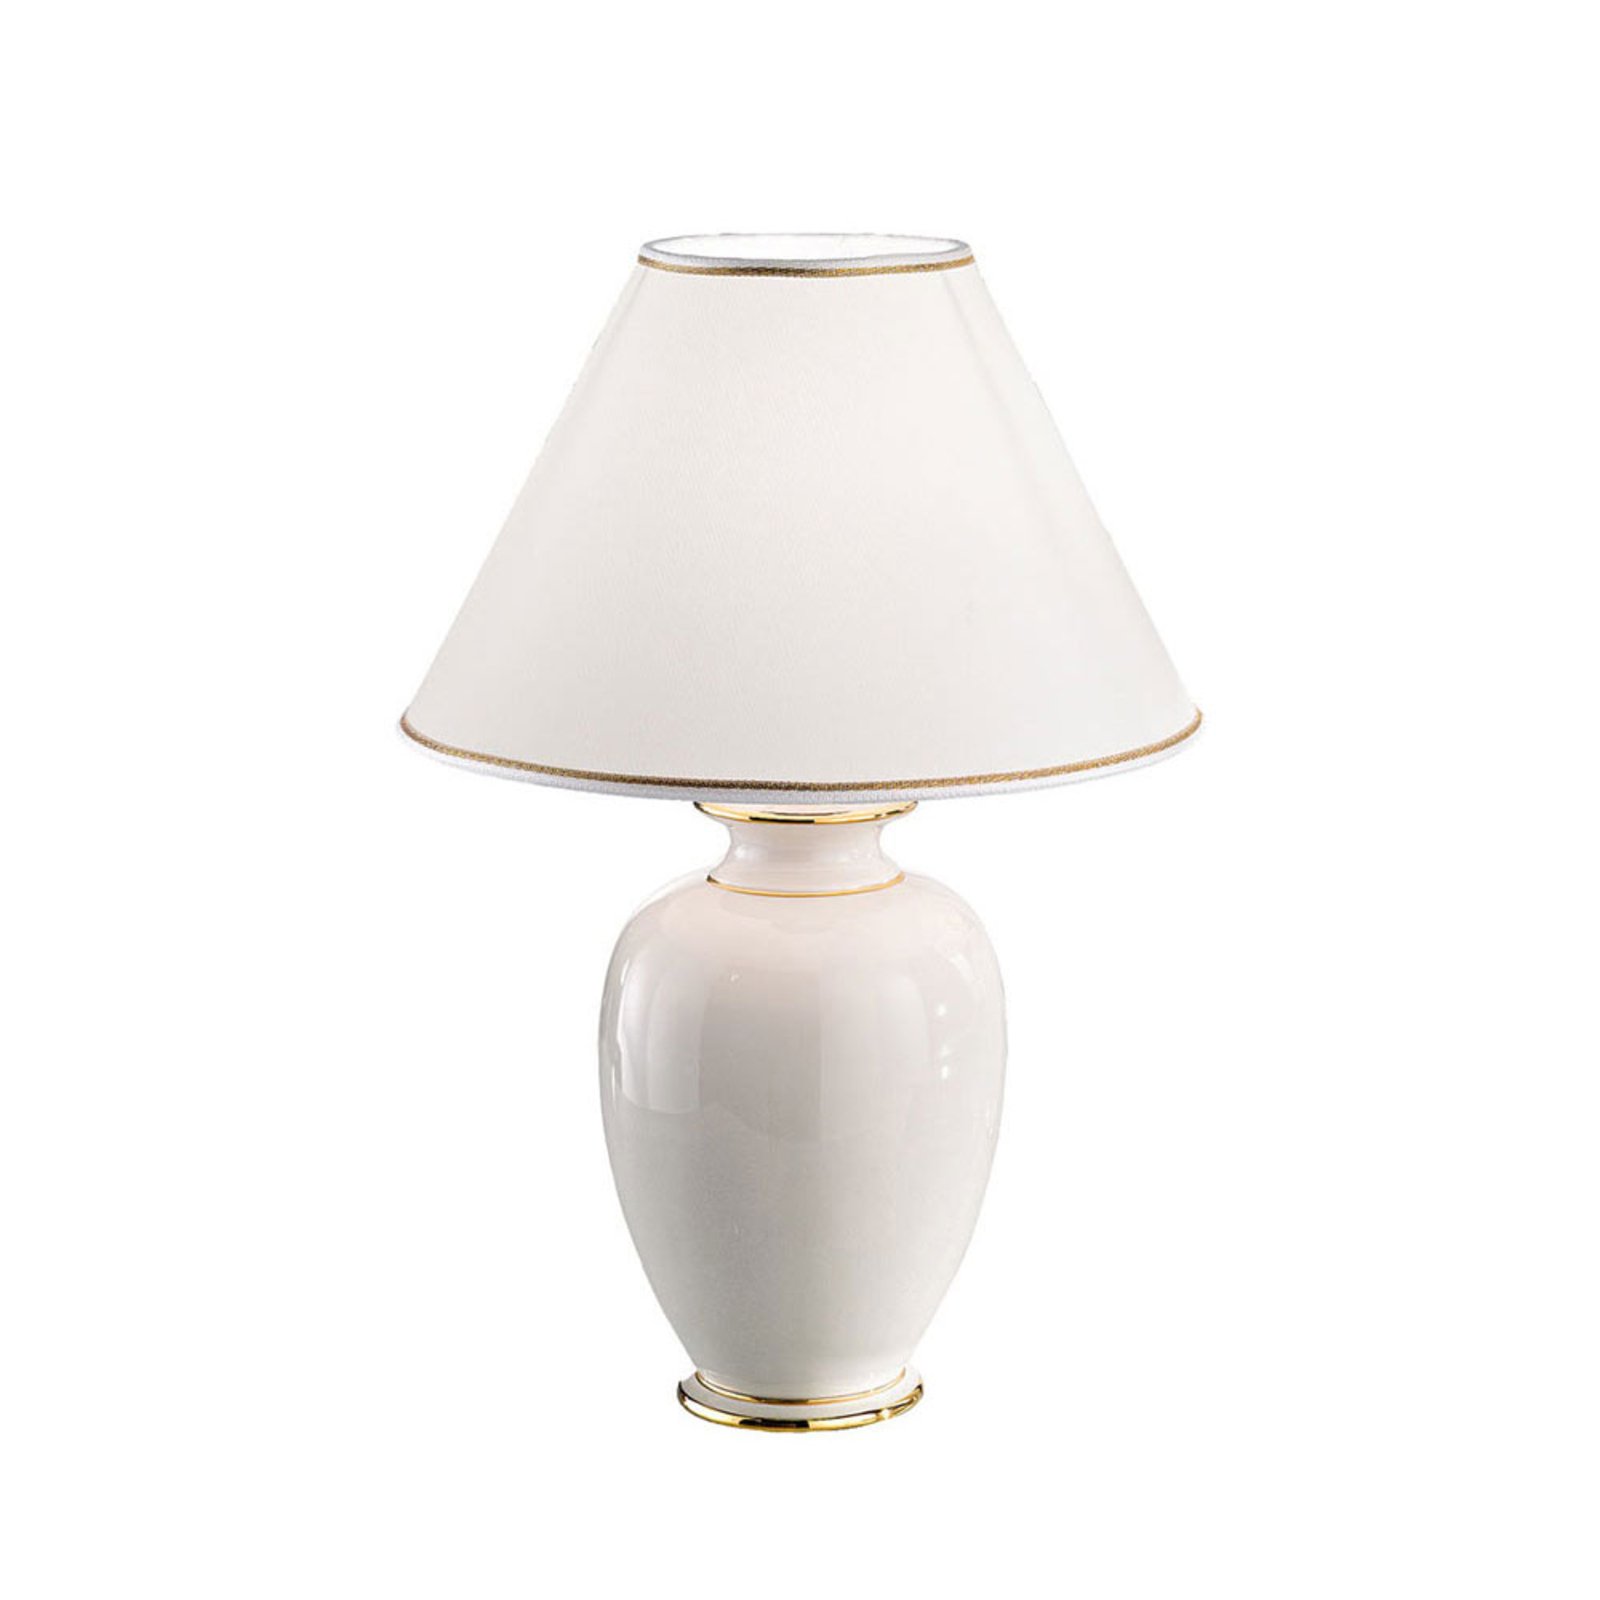 Pöytälamppu Giardino Avorio valkoinen-kulta Ø30cm